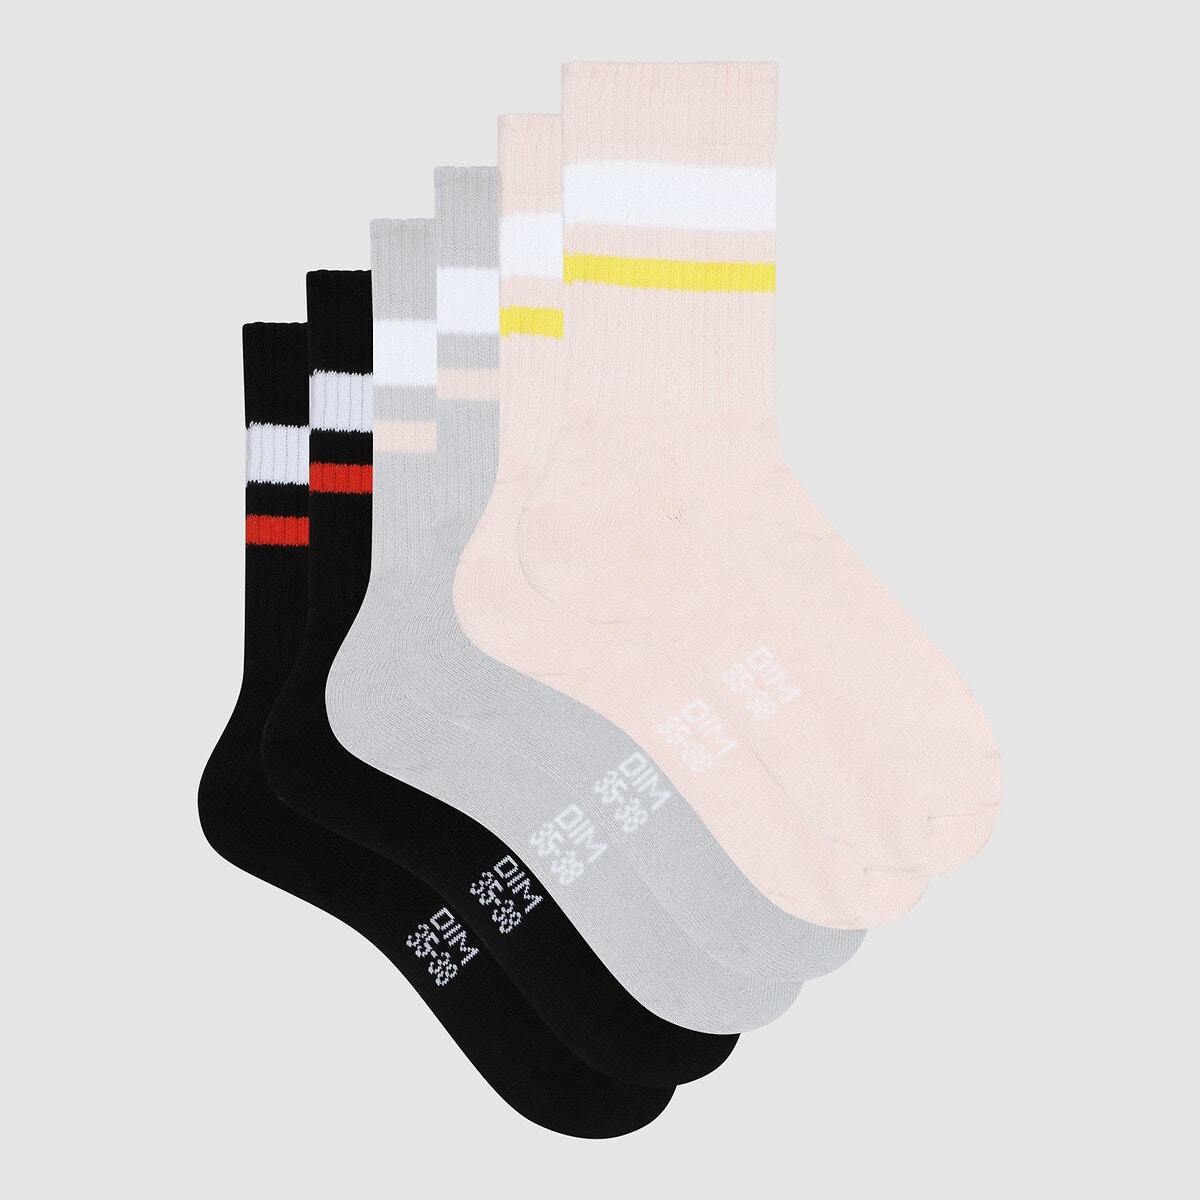 Σετ 3 ζευγάρια κάλτσες, EcoDIM Sport